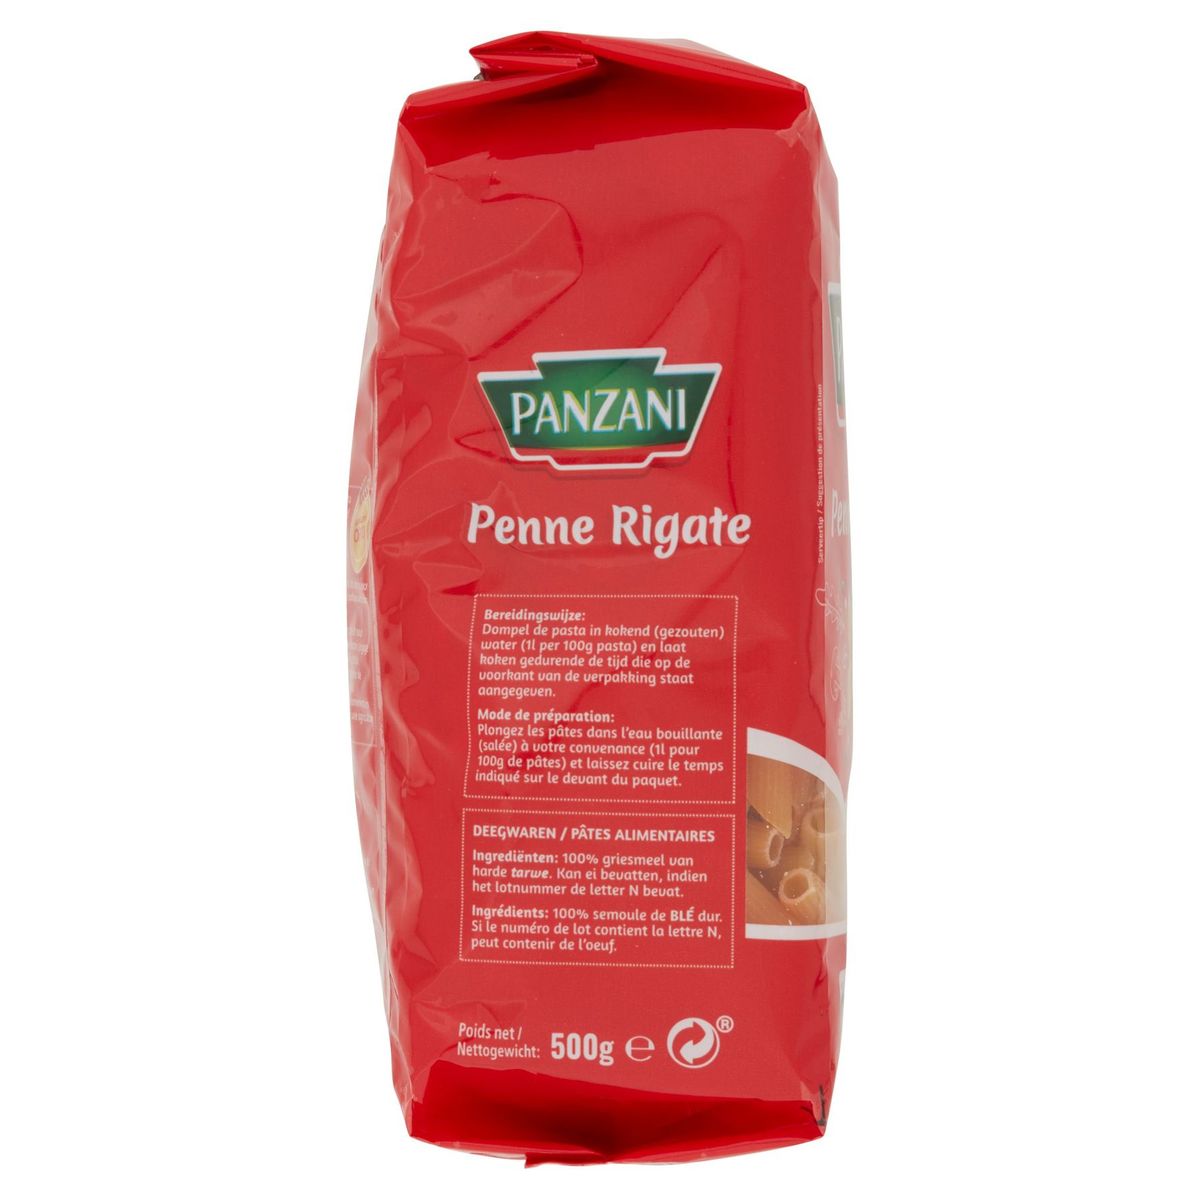 Panzani Penne Rigate 500 g